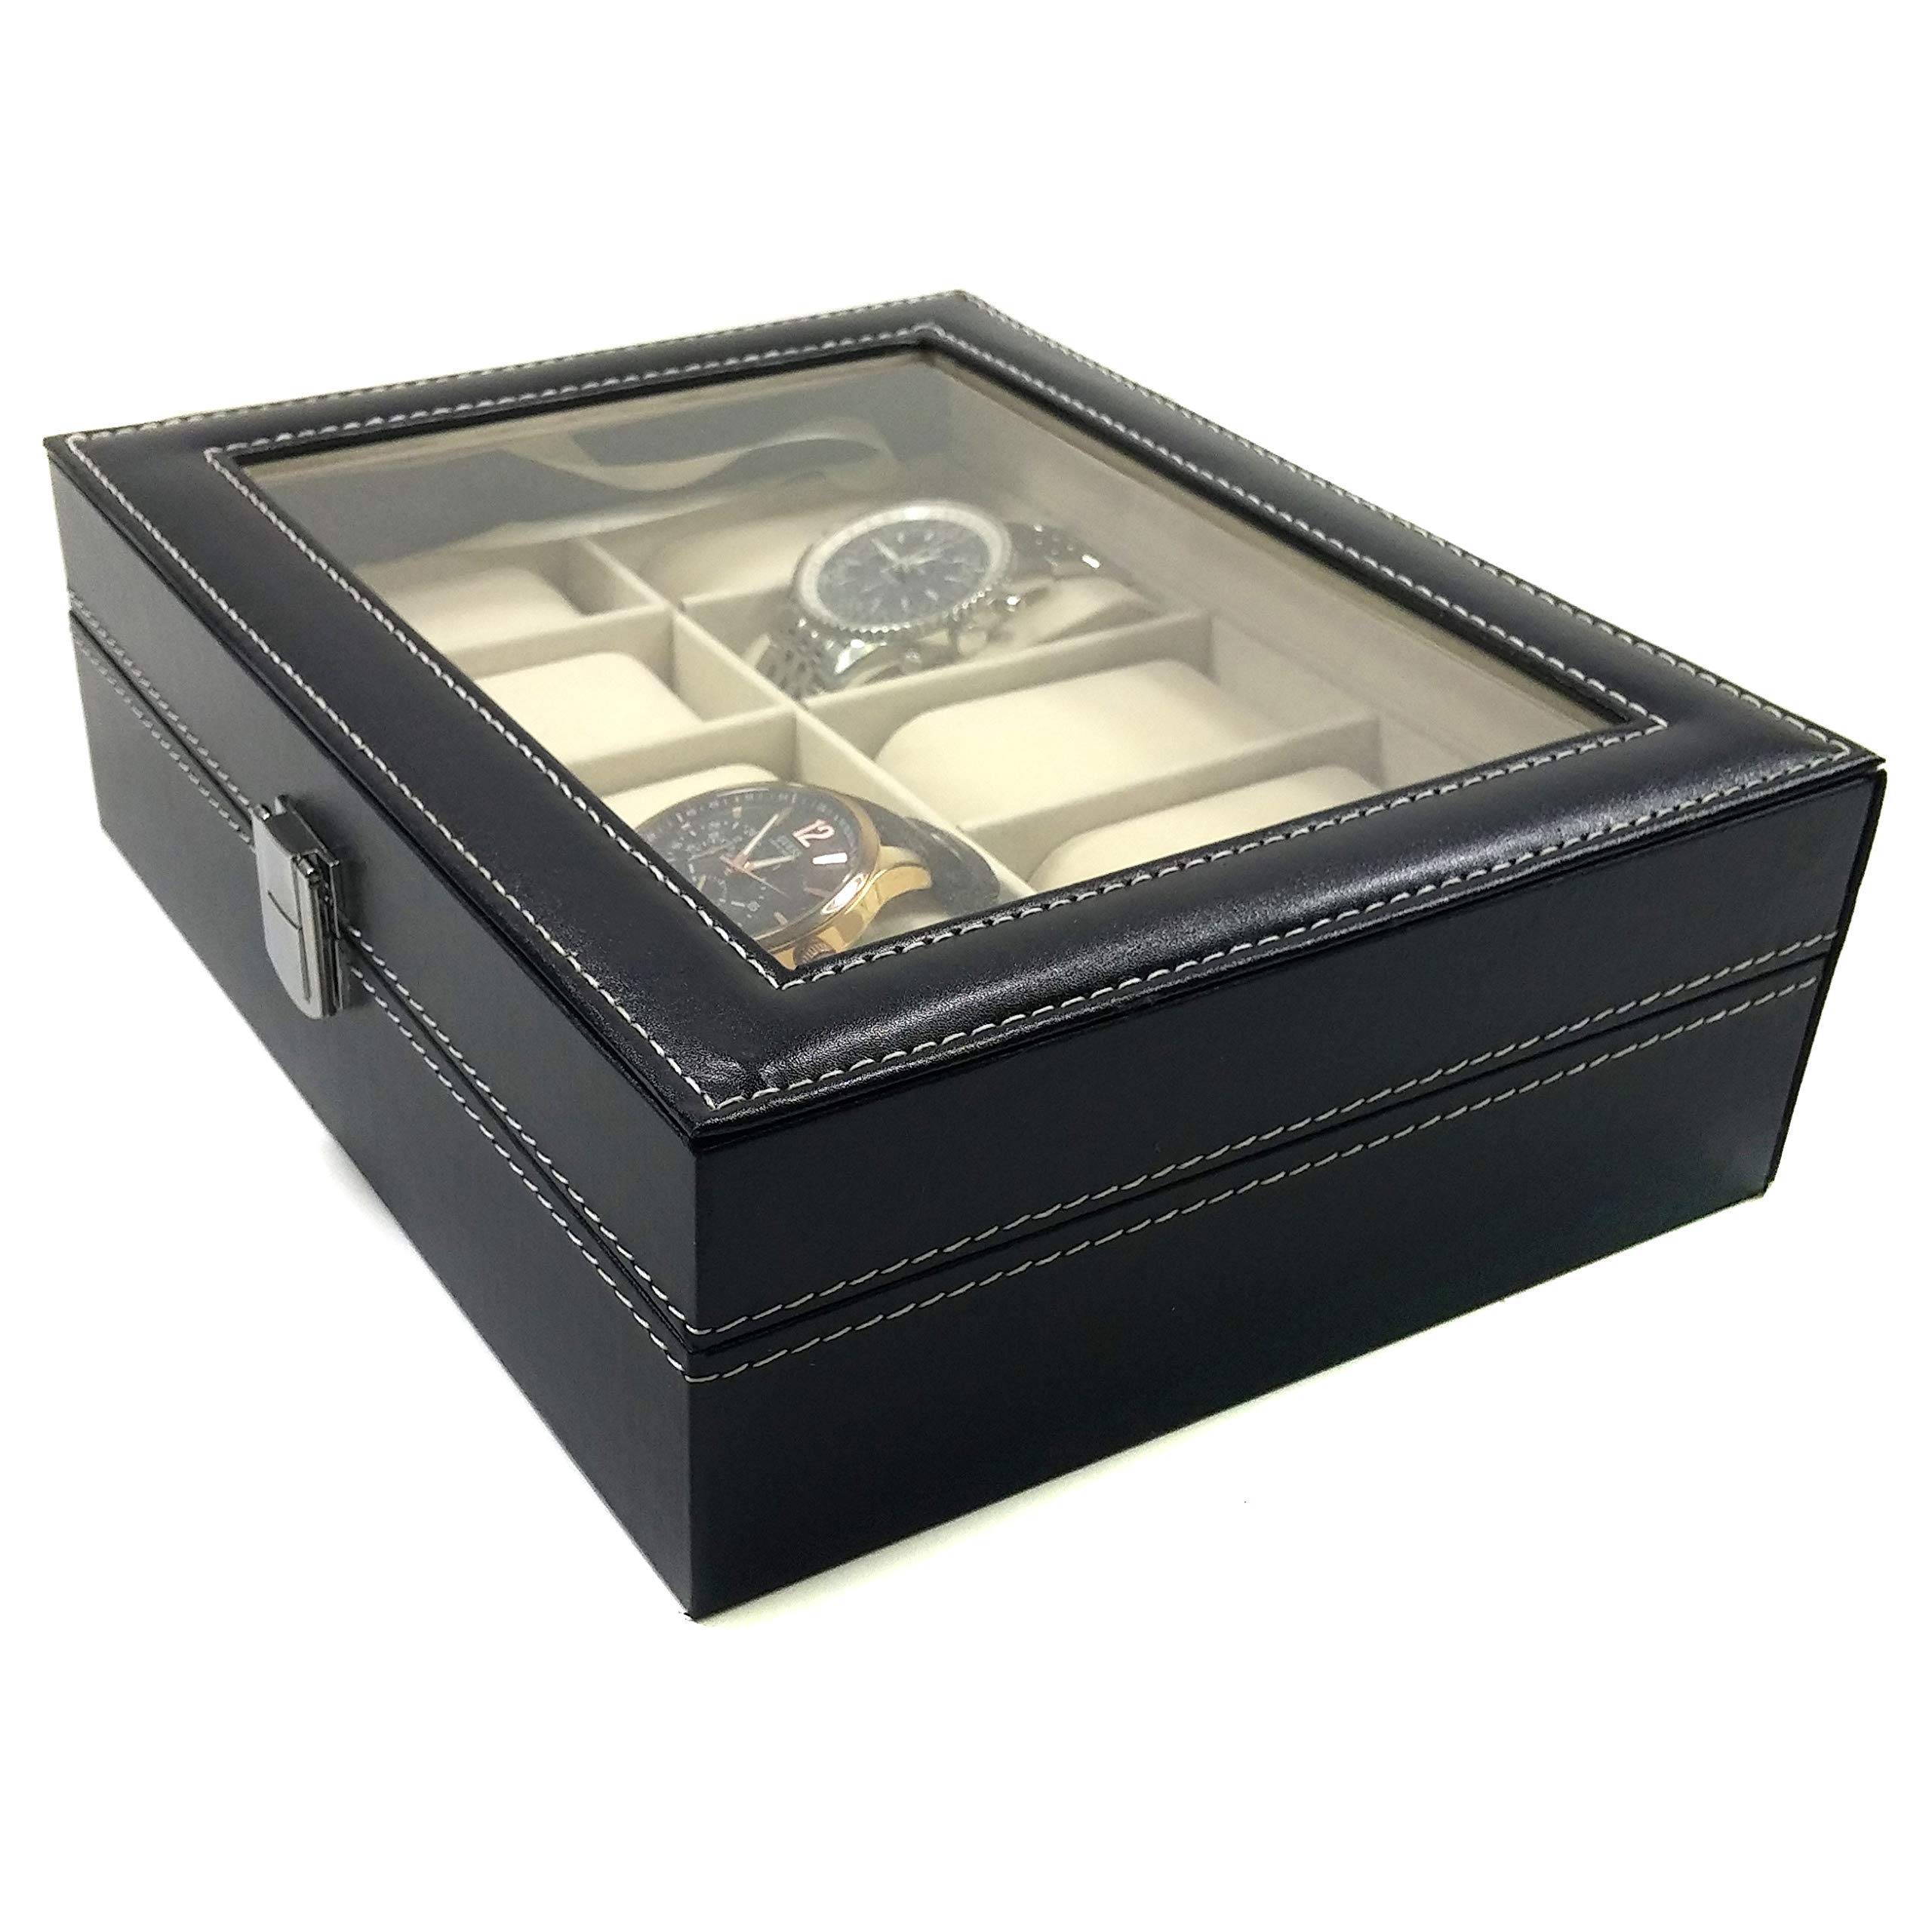 Science Purchase 78AMZN10GRID- Wild-us PU Leather 10 Grid Watch Display Box Jewelry Storage Organizer, Black with Keys